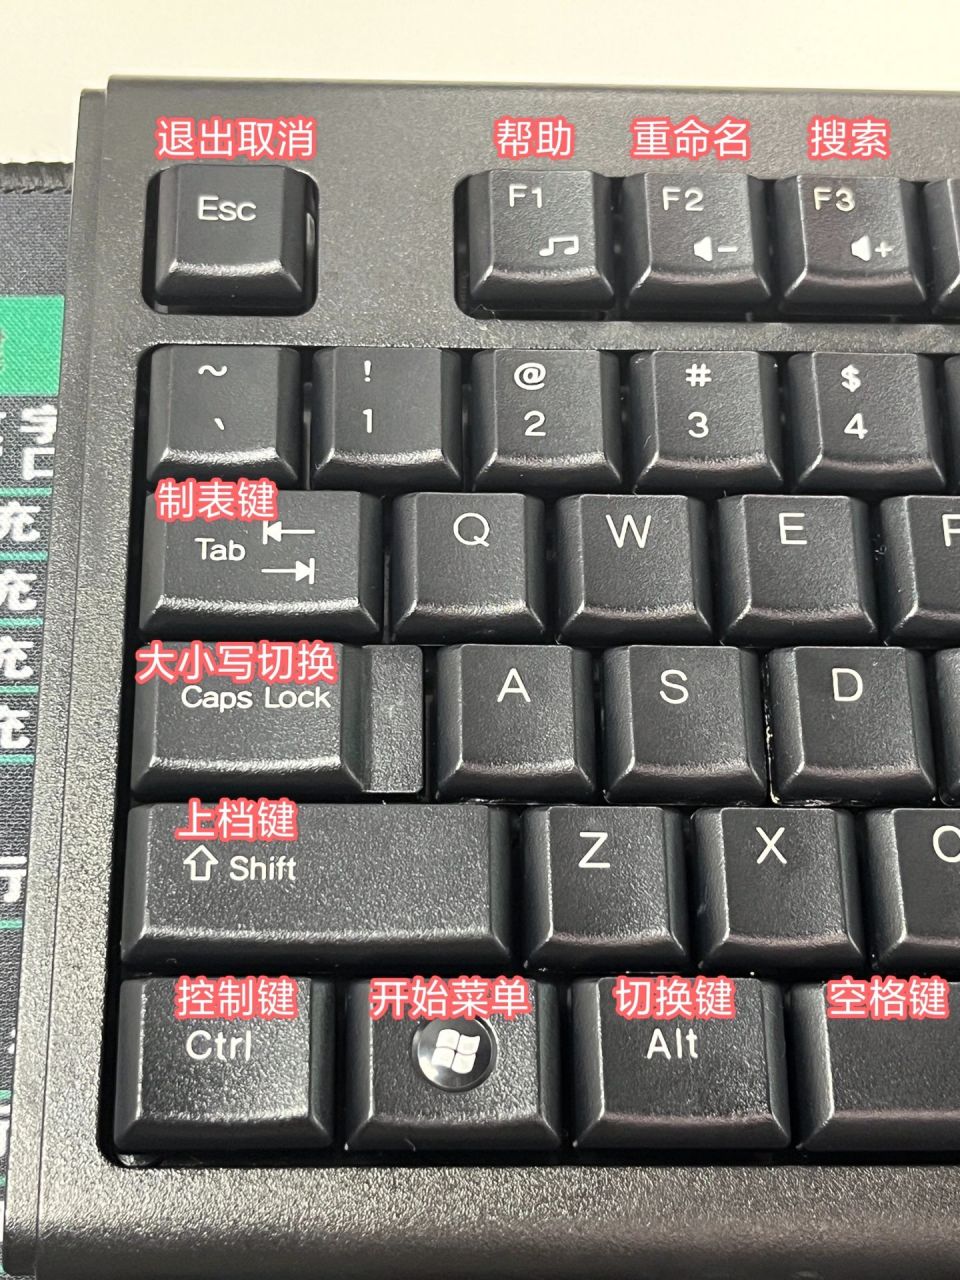 中文键盘图片搞笑图片